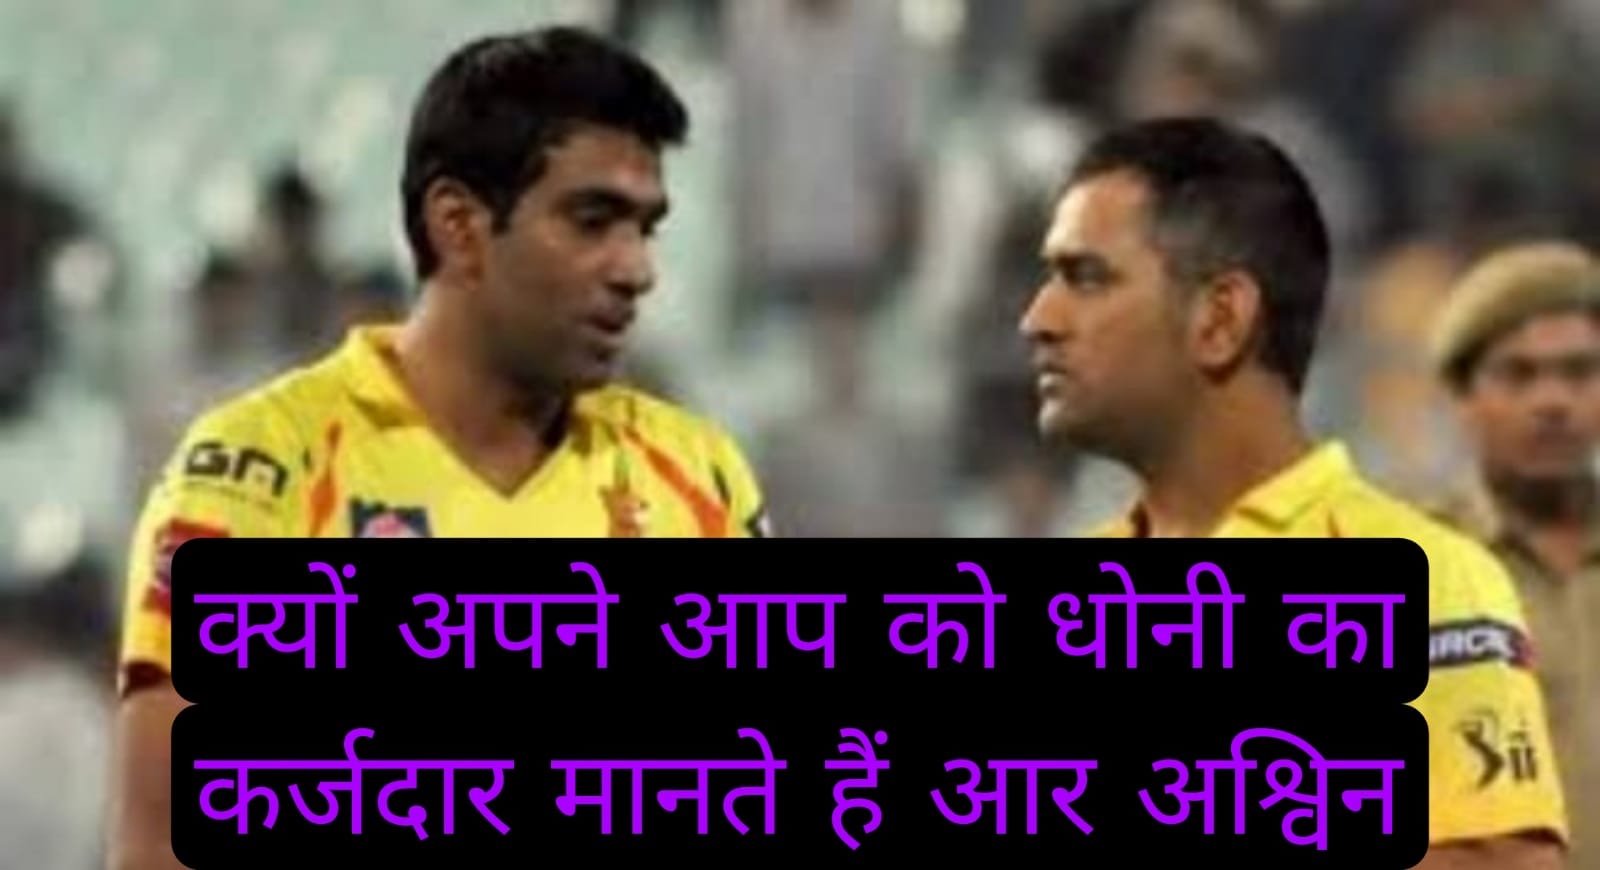 अपने को महेंद्र सिंह धोनी का कर्जदार मानते हैं भारतीय टीम के स्टार स्पिन गेंदबाज आर अश्विन, जानें कारण 